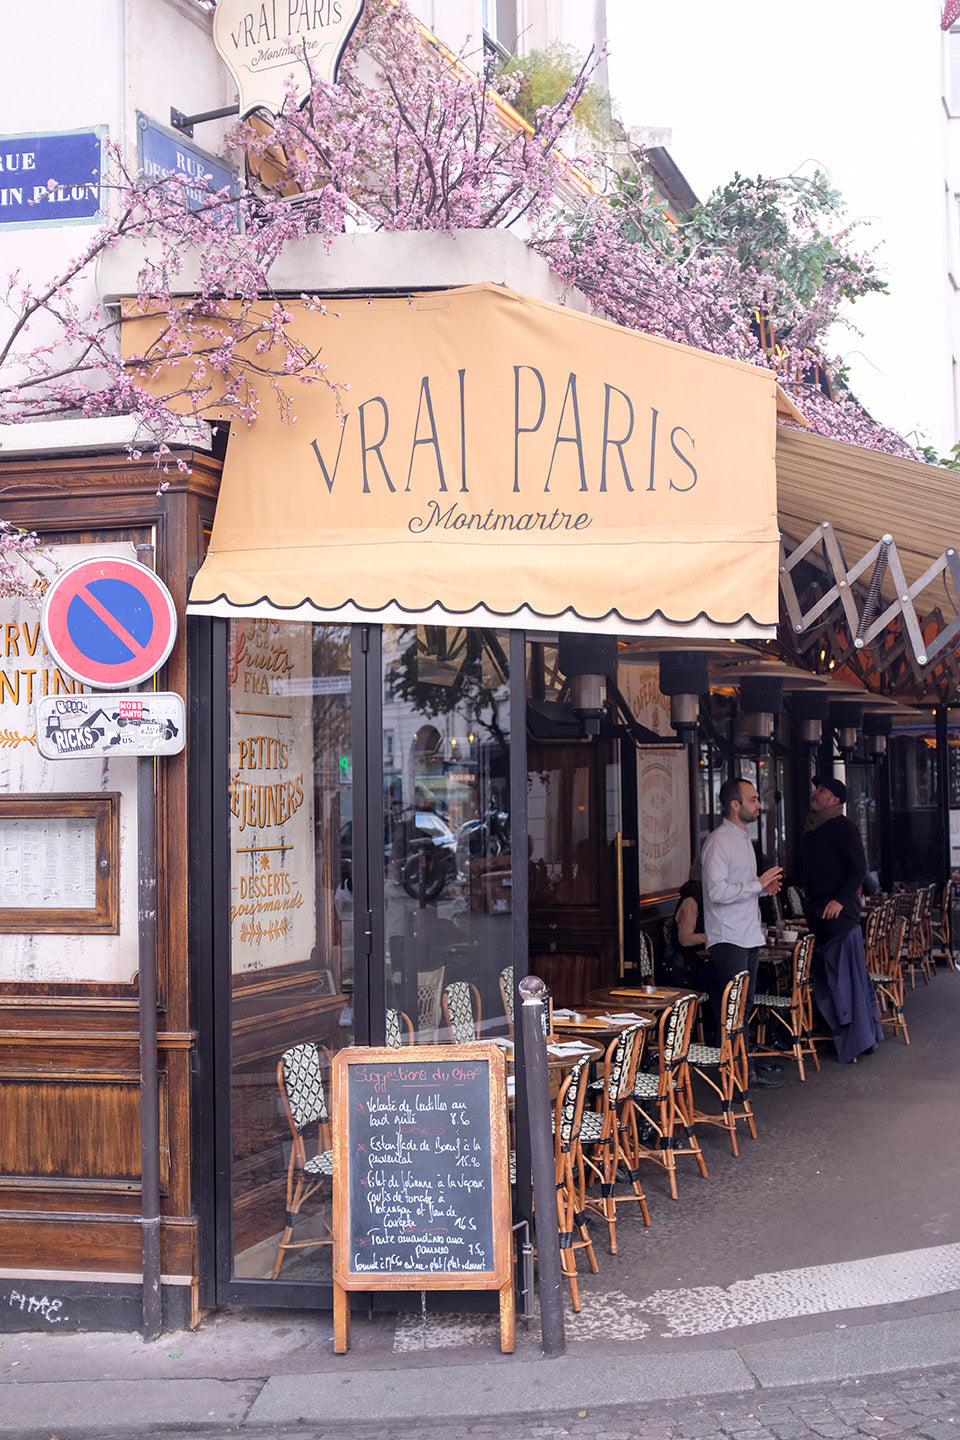 Le Vrai Paris in Montmartre - Every Day Paris 